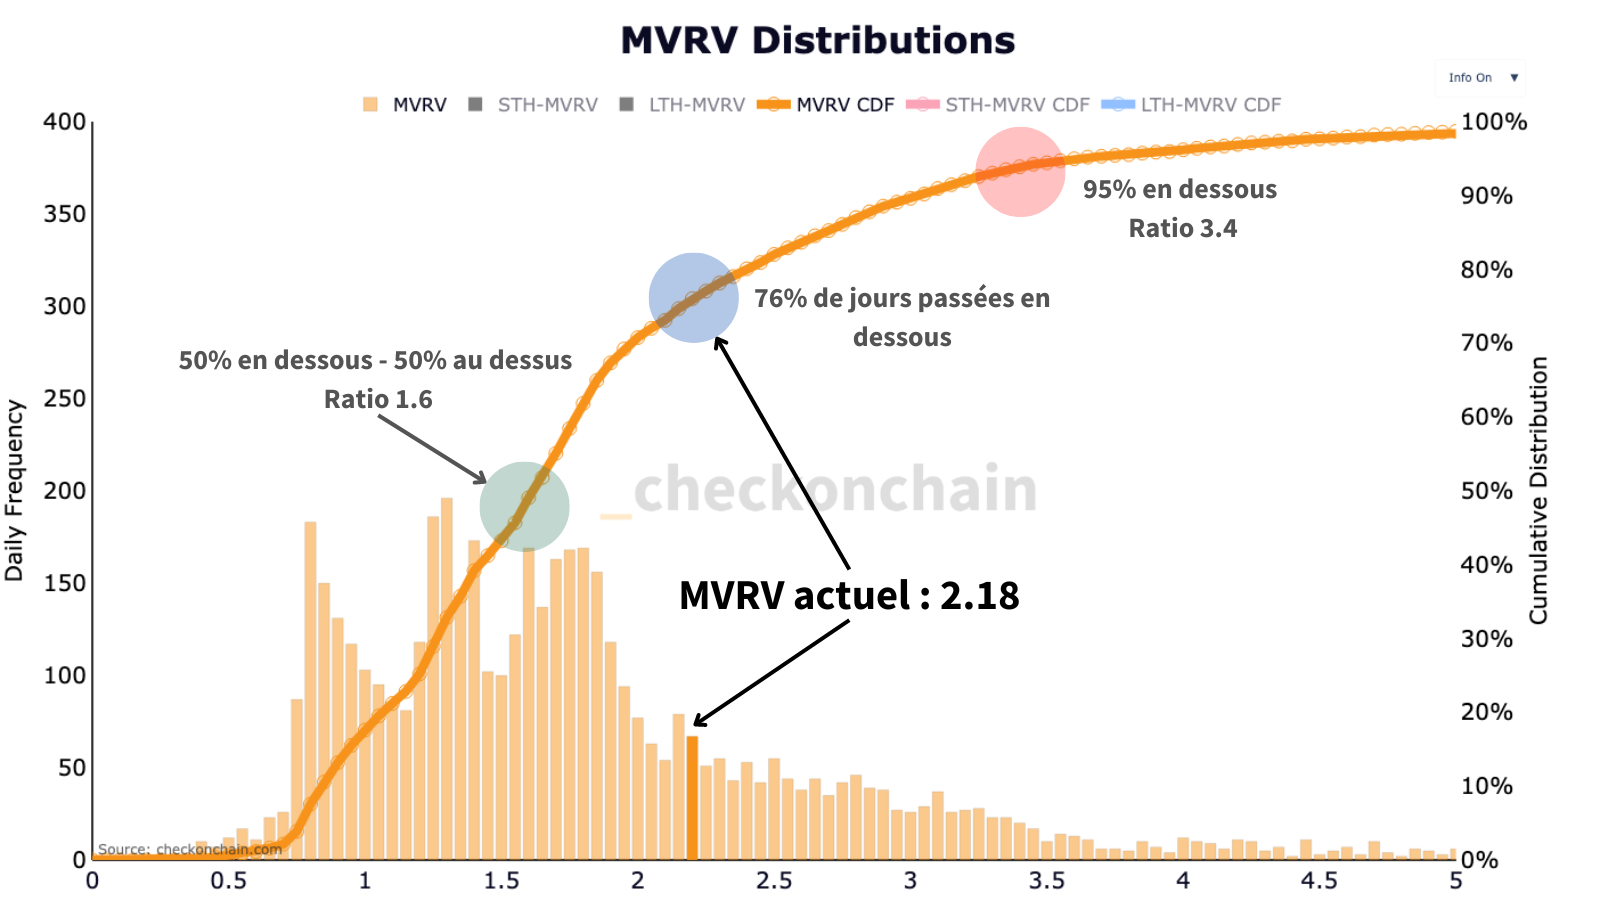 L'image met en avant le MVRV Distribution et démontre que le MVRV est situé quelque part au milieu d'une configuration classique d'une moitié de cycle haussier sur le marché actuel.